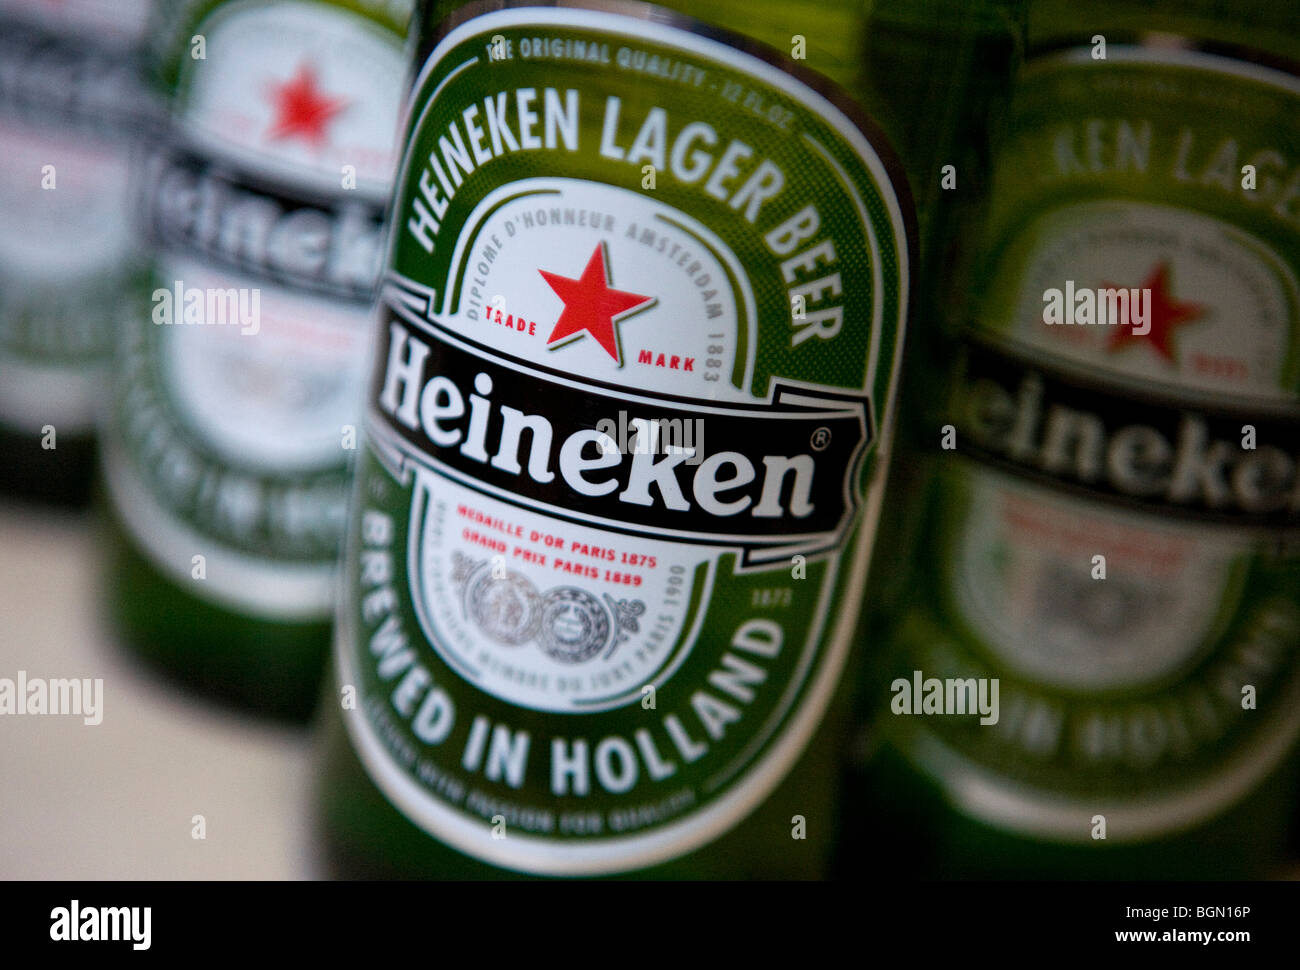 Heineken beer bottles.  Stock Photo